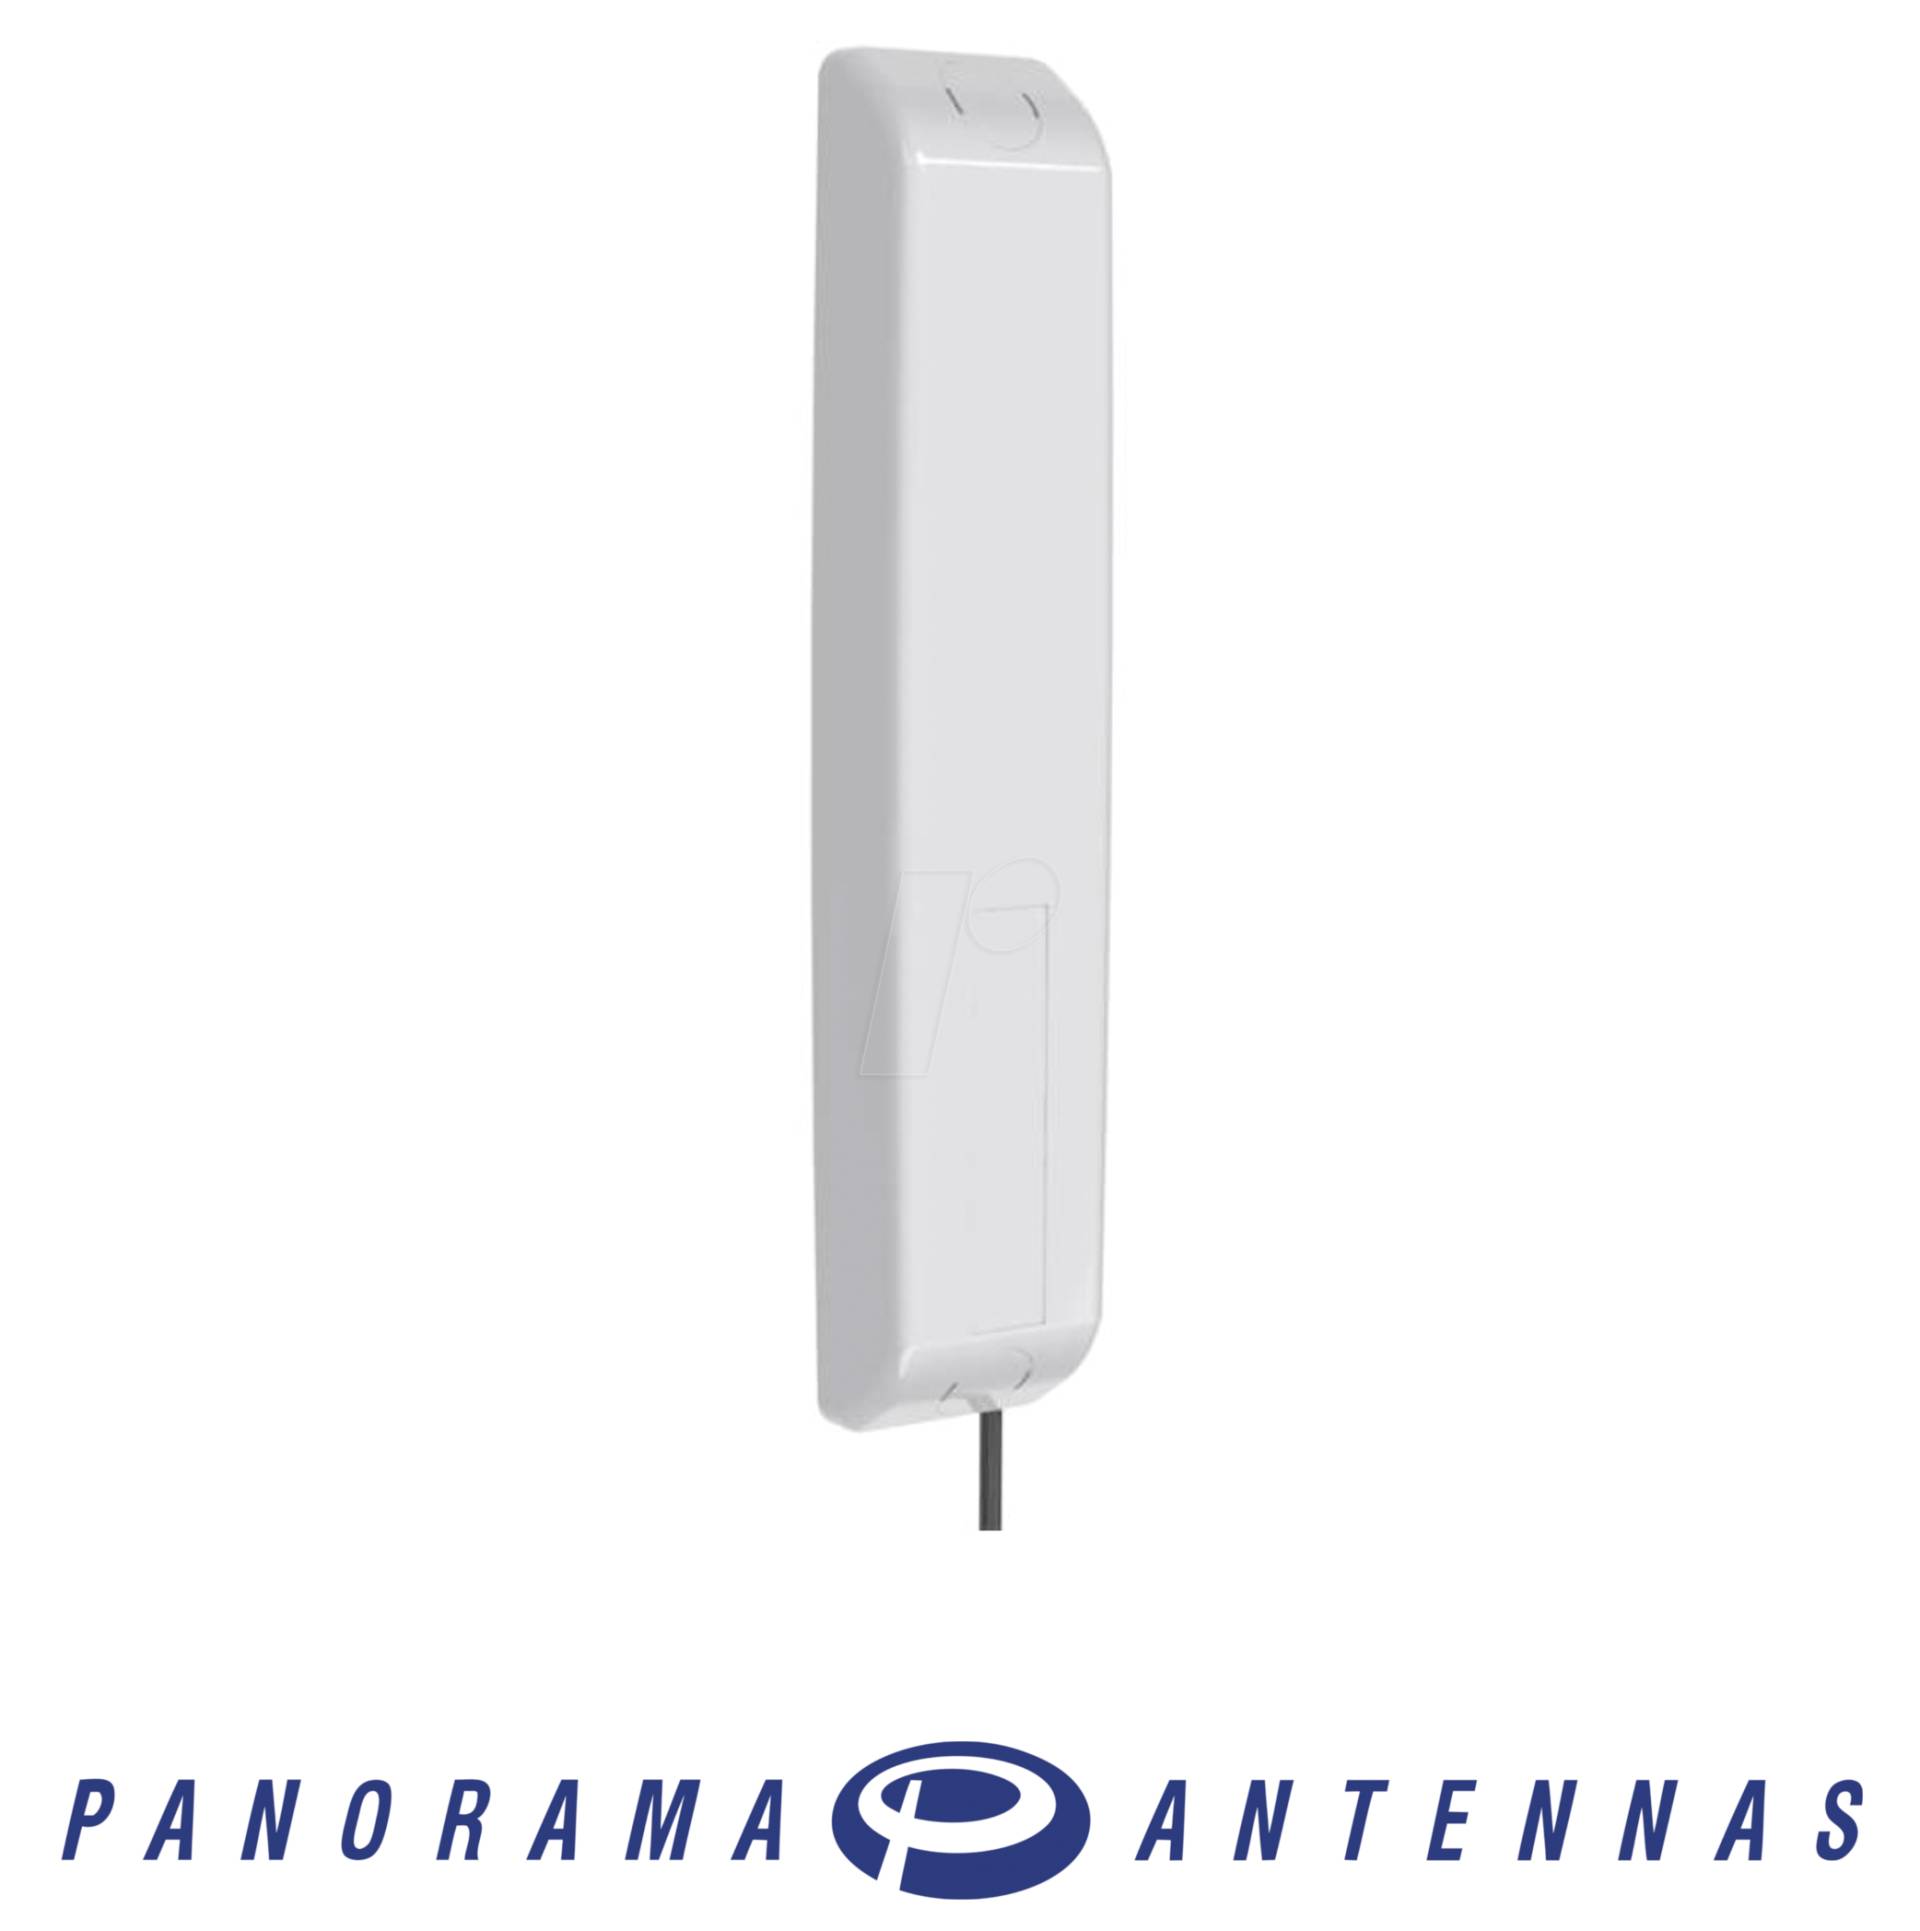 IN2214 - Smart Meter Antenne von PANORAMA ANTENNAS